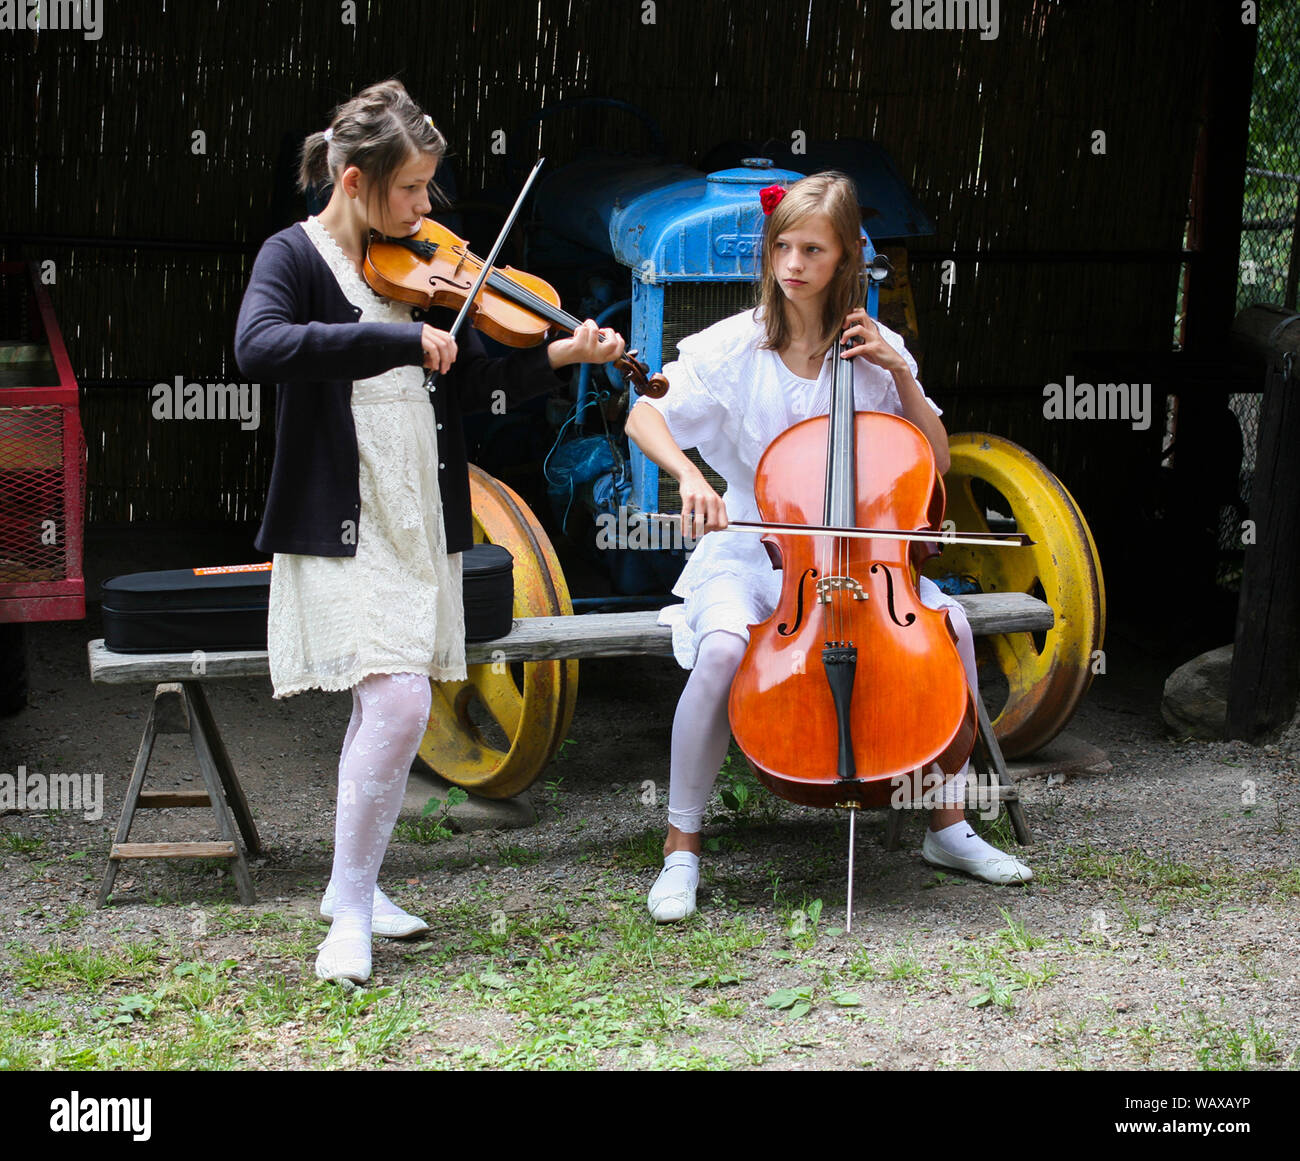 Deux jeunes musicien sur folk music festival à jouer du violon et violoncelle Banque D'Images